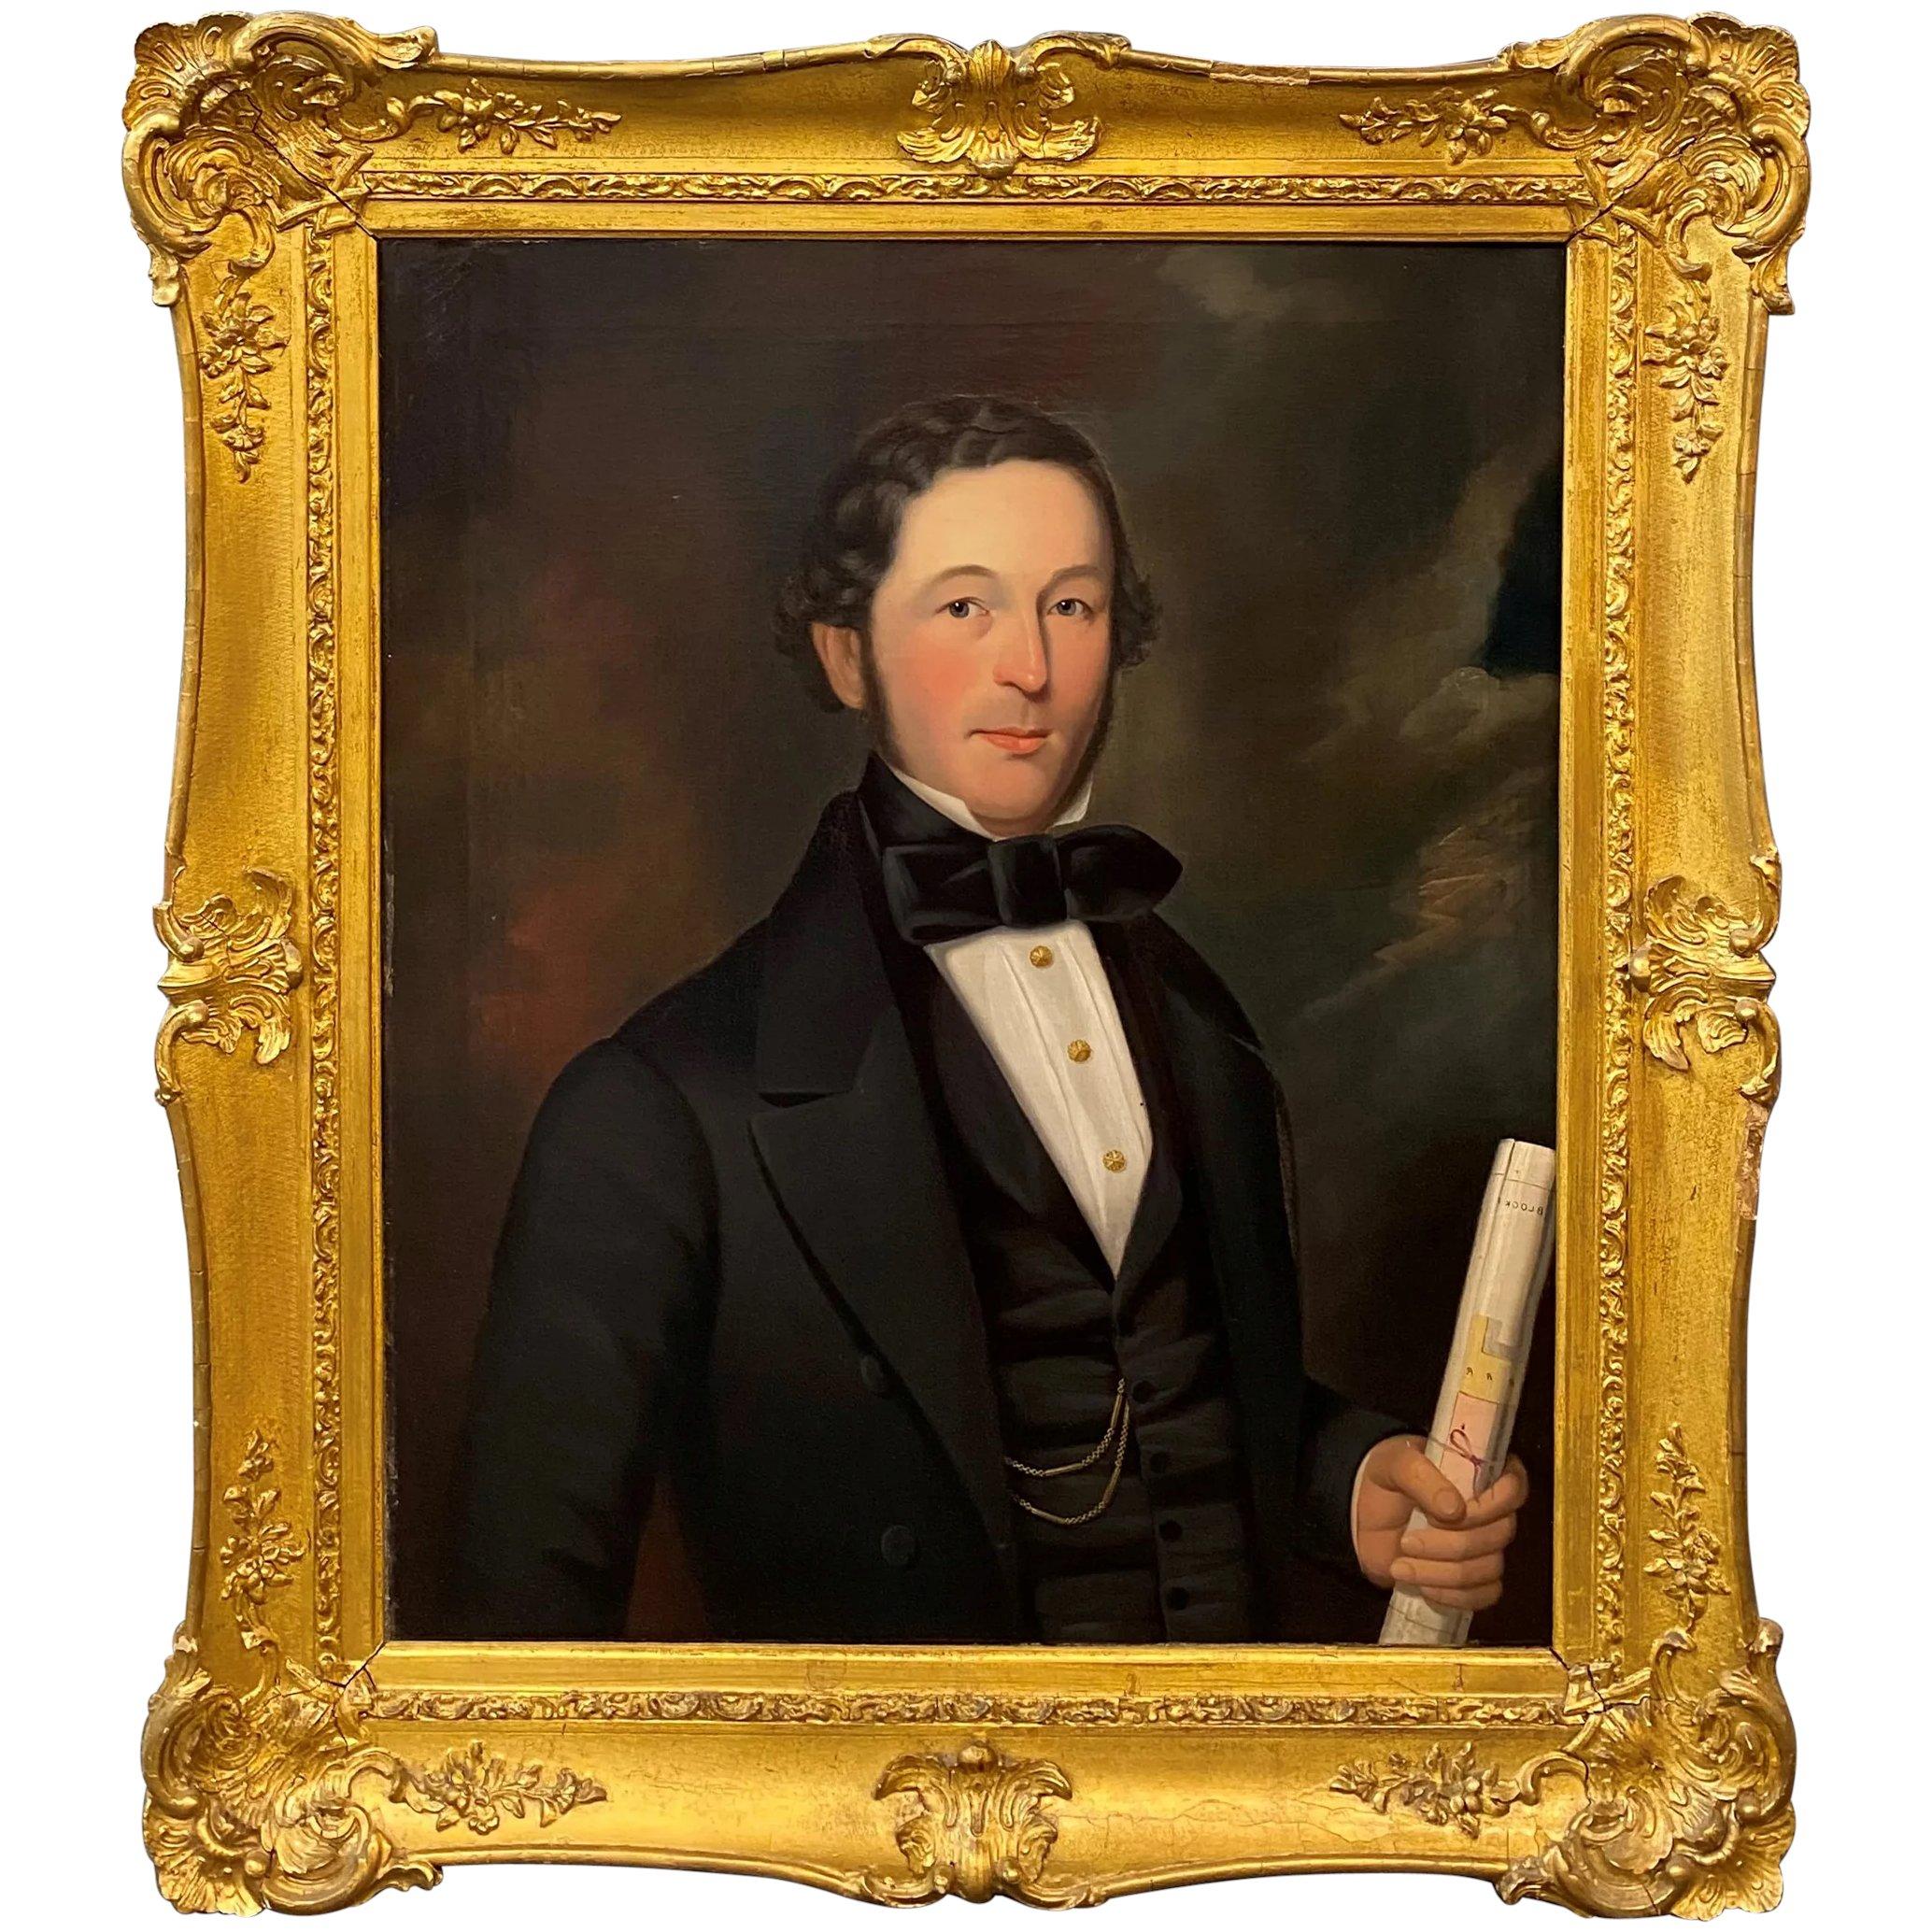 George Hedley Portrait Painting – Porträt eines Gentleman oder Architekten